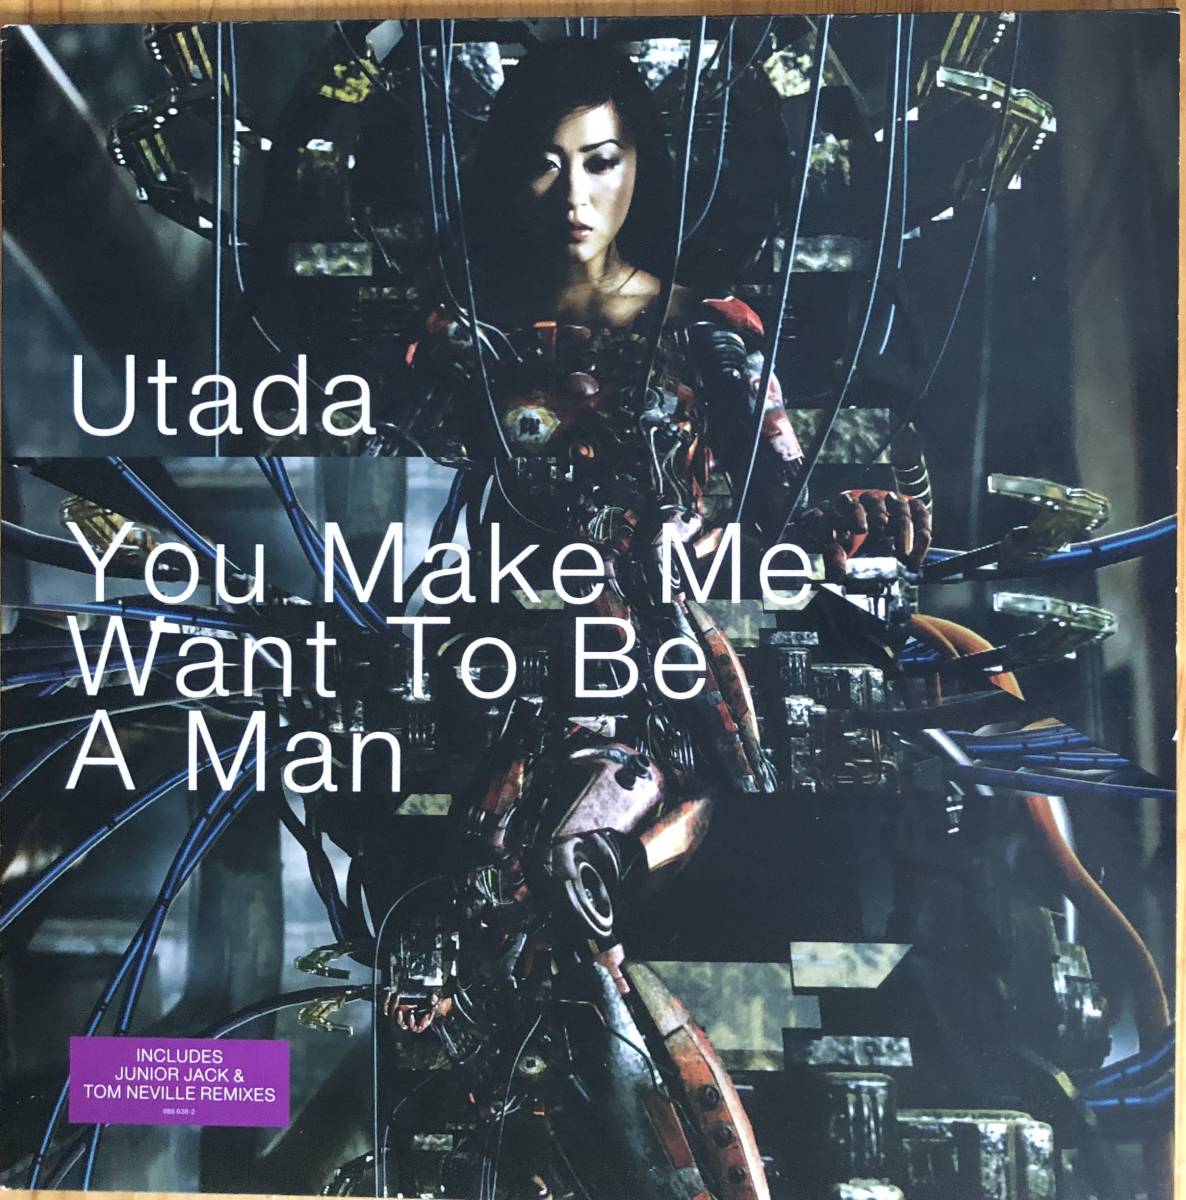 男女兼用 Want Me Make You Utada To レコード 宇多田ヒカル Man A Be